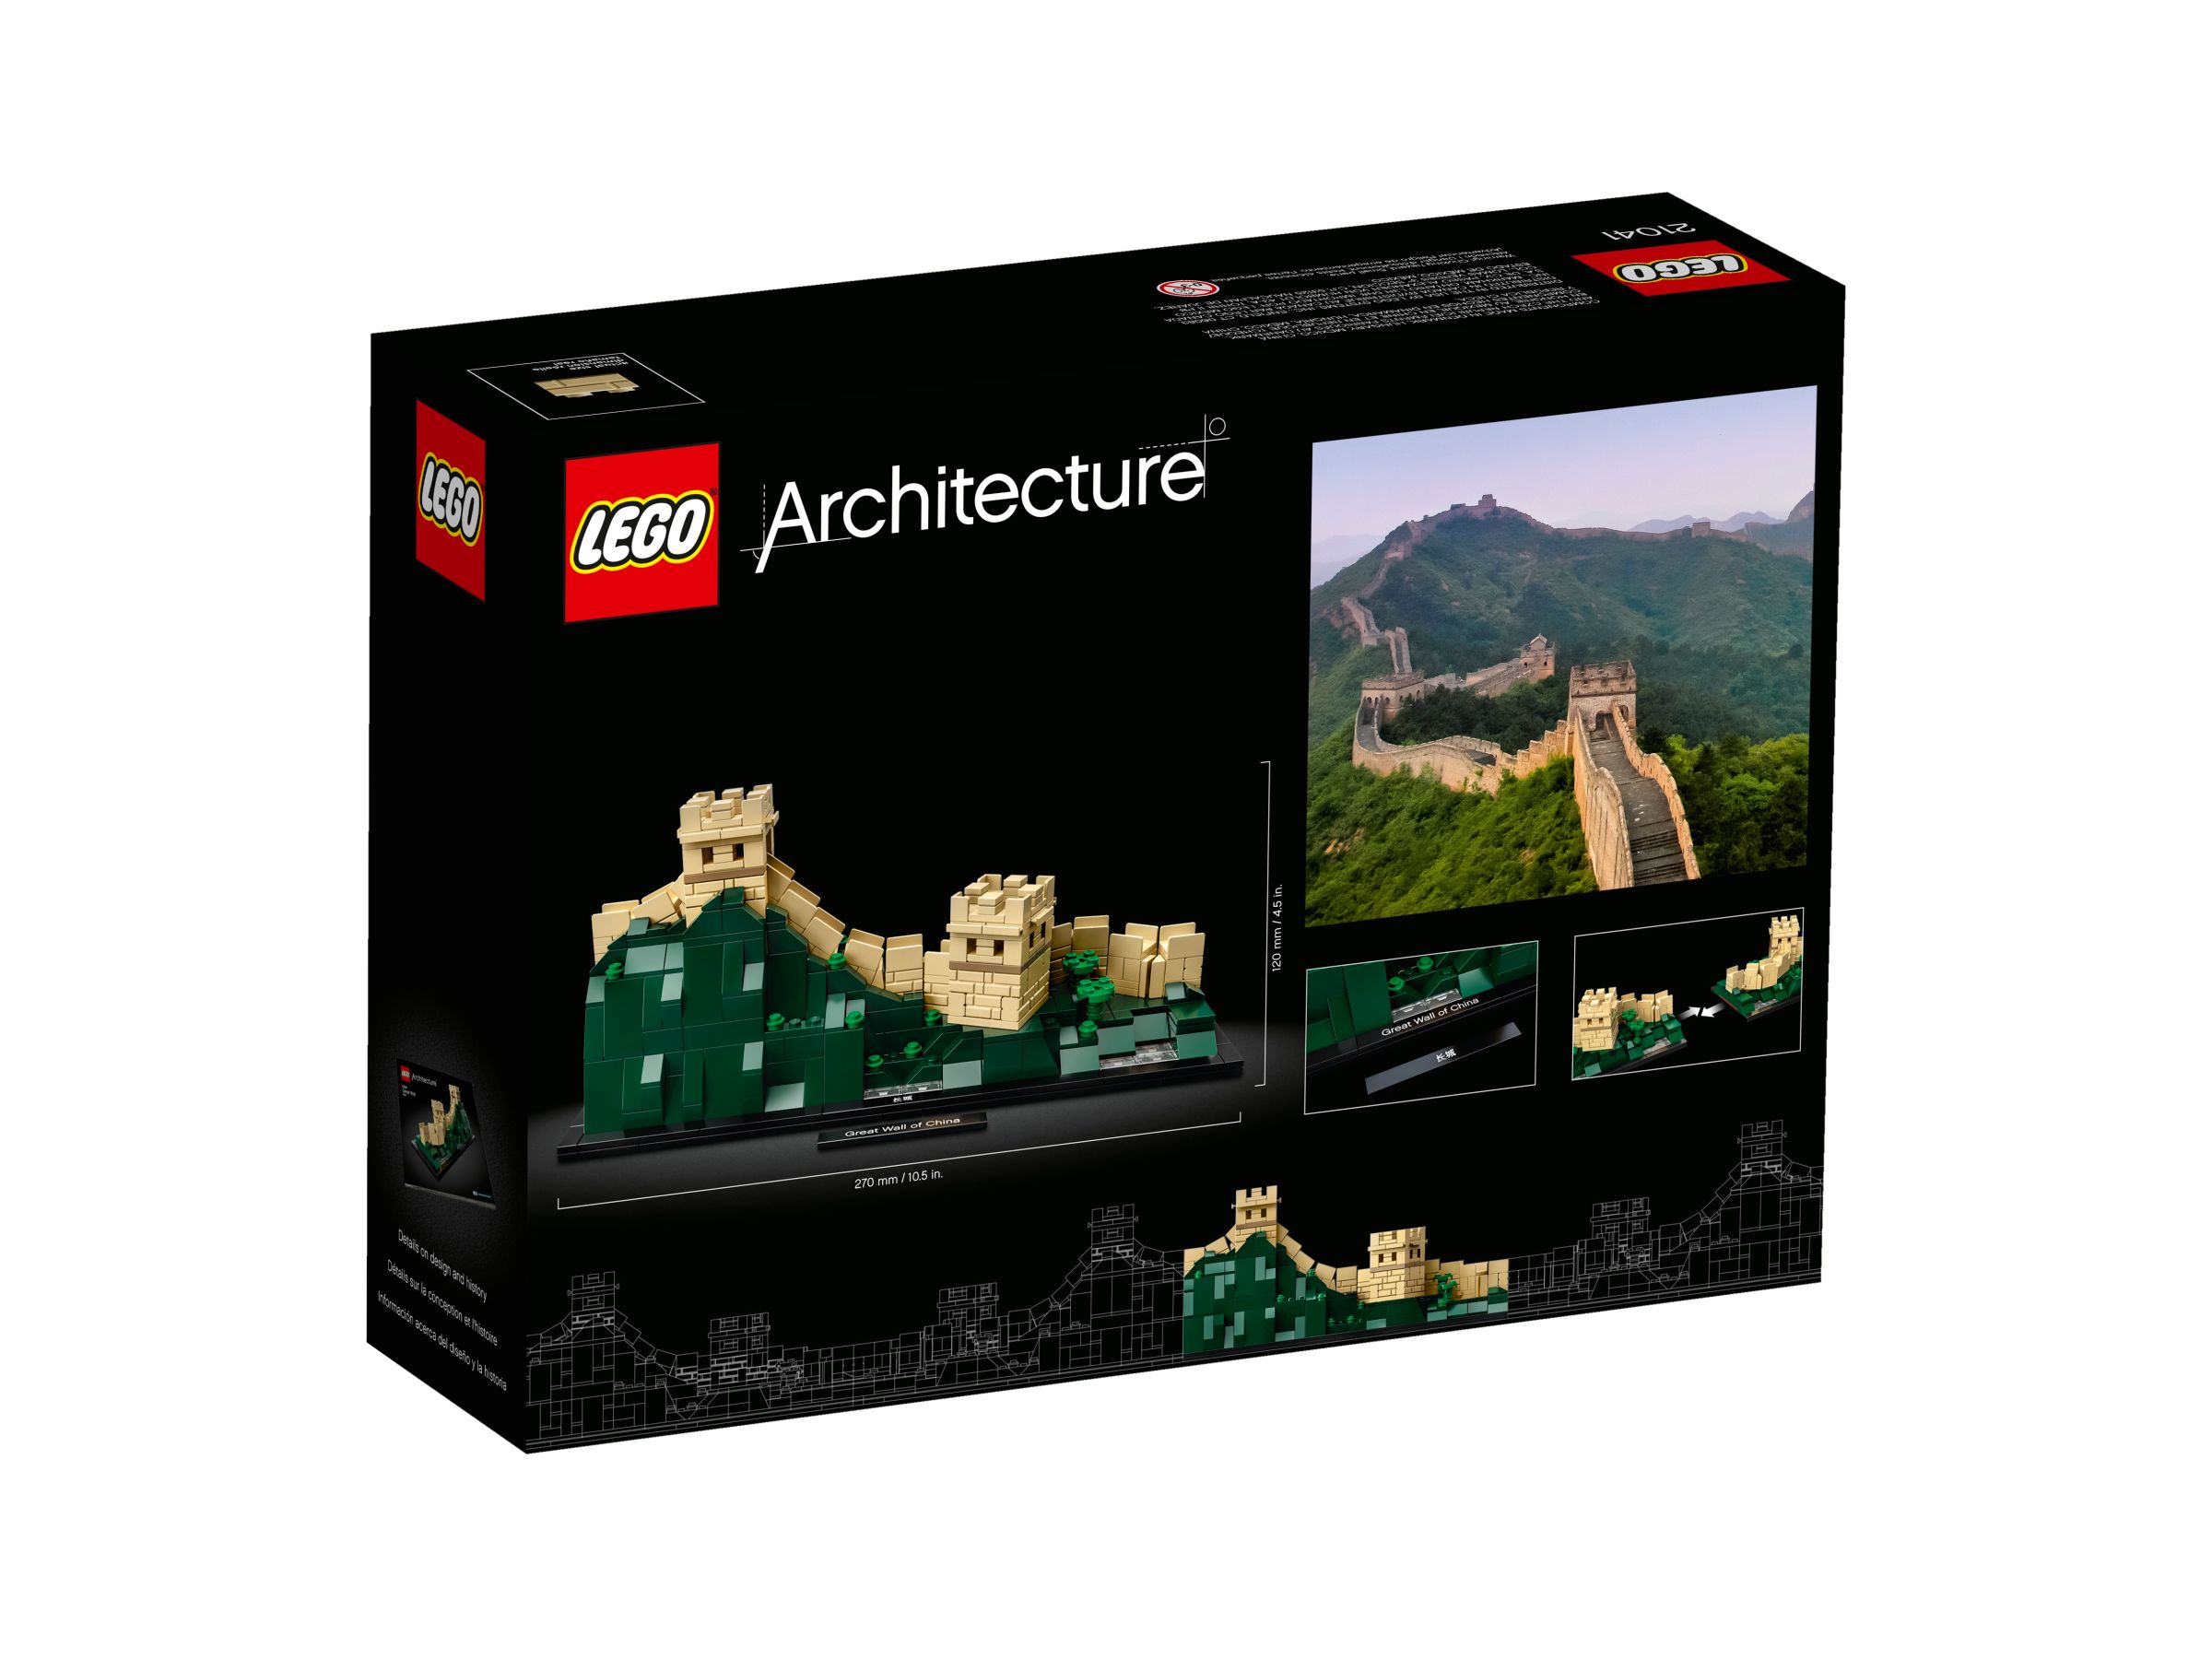 LEGO Architecture 21041 Die Chinesische Mauer LEGO_21041_alt4.jpg